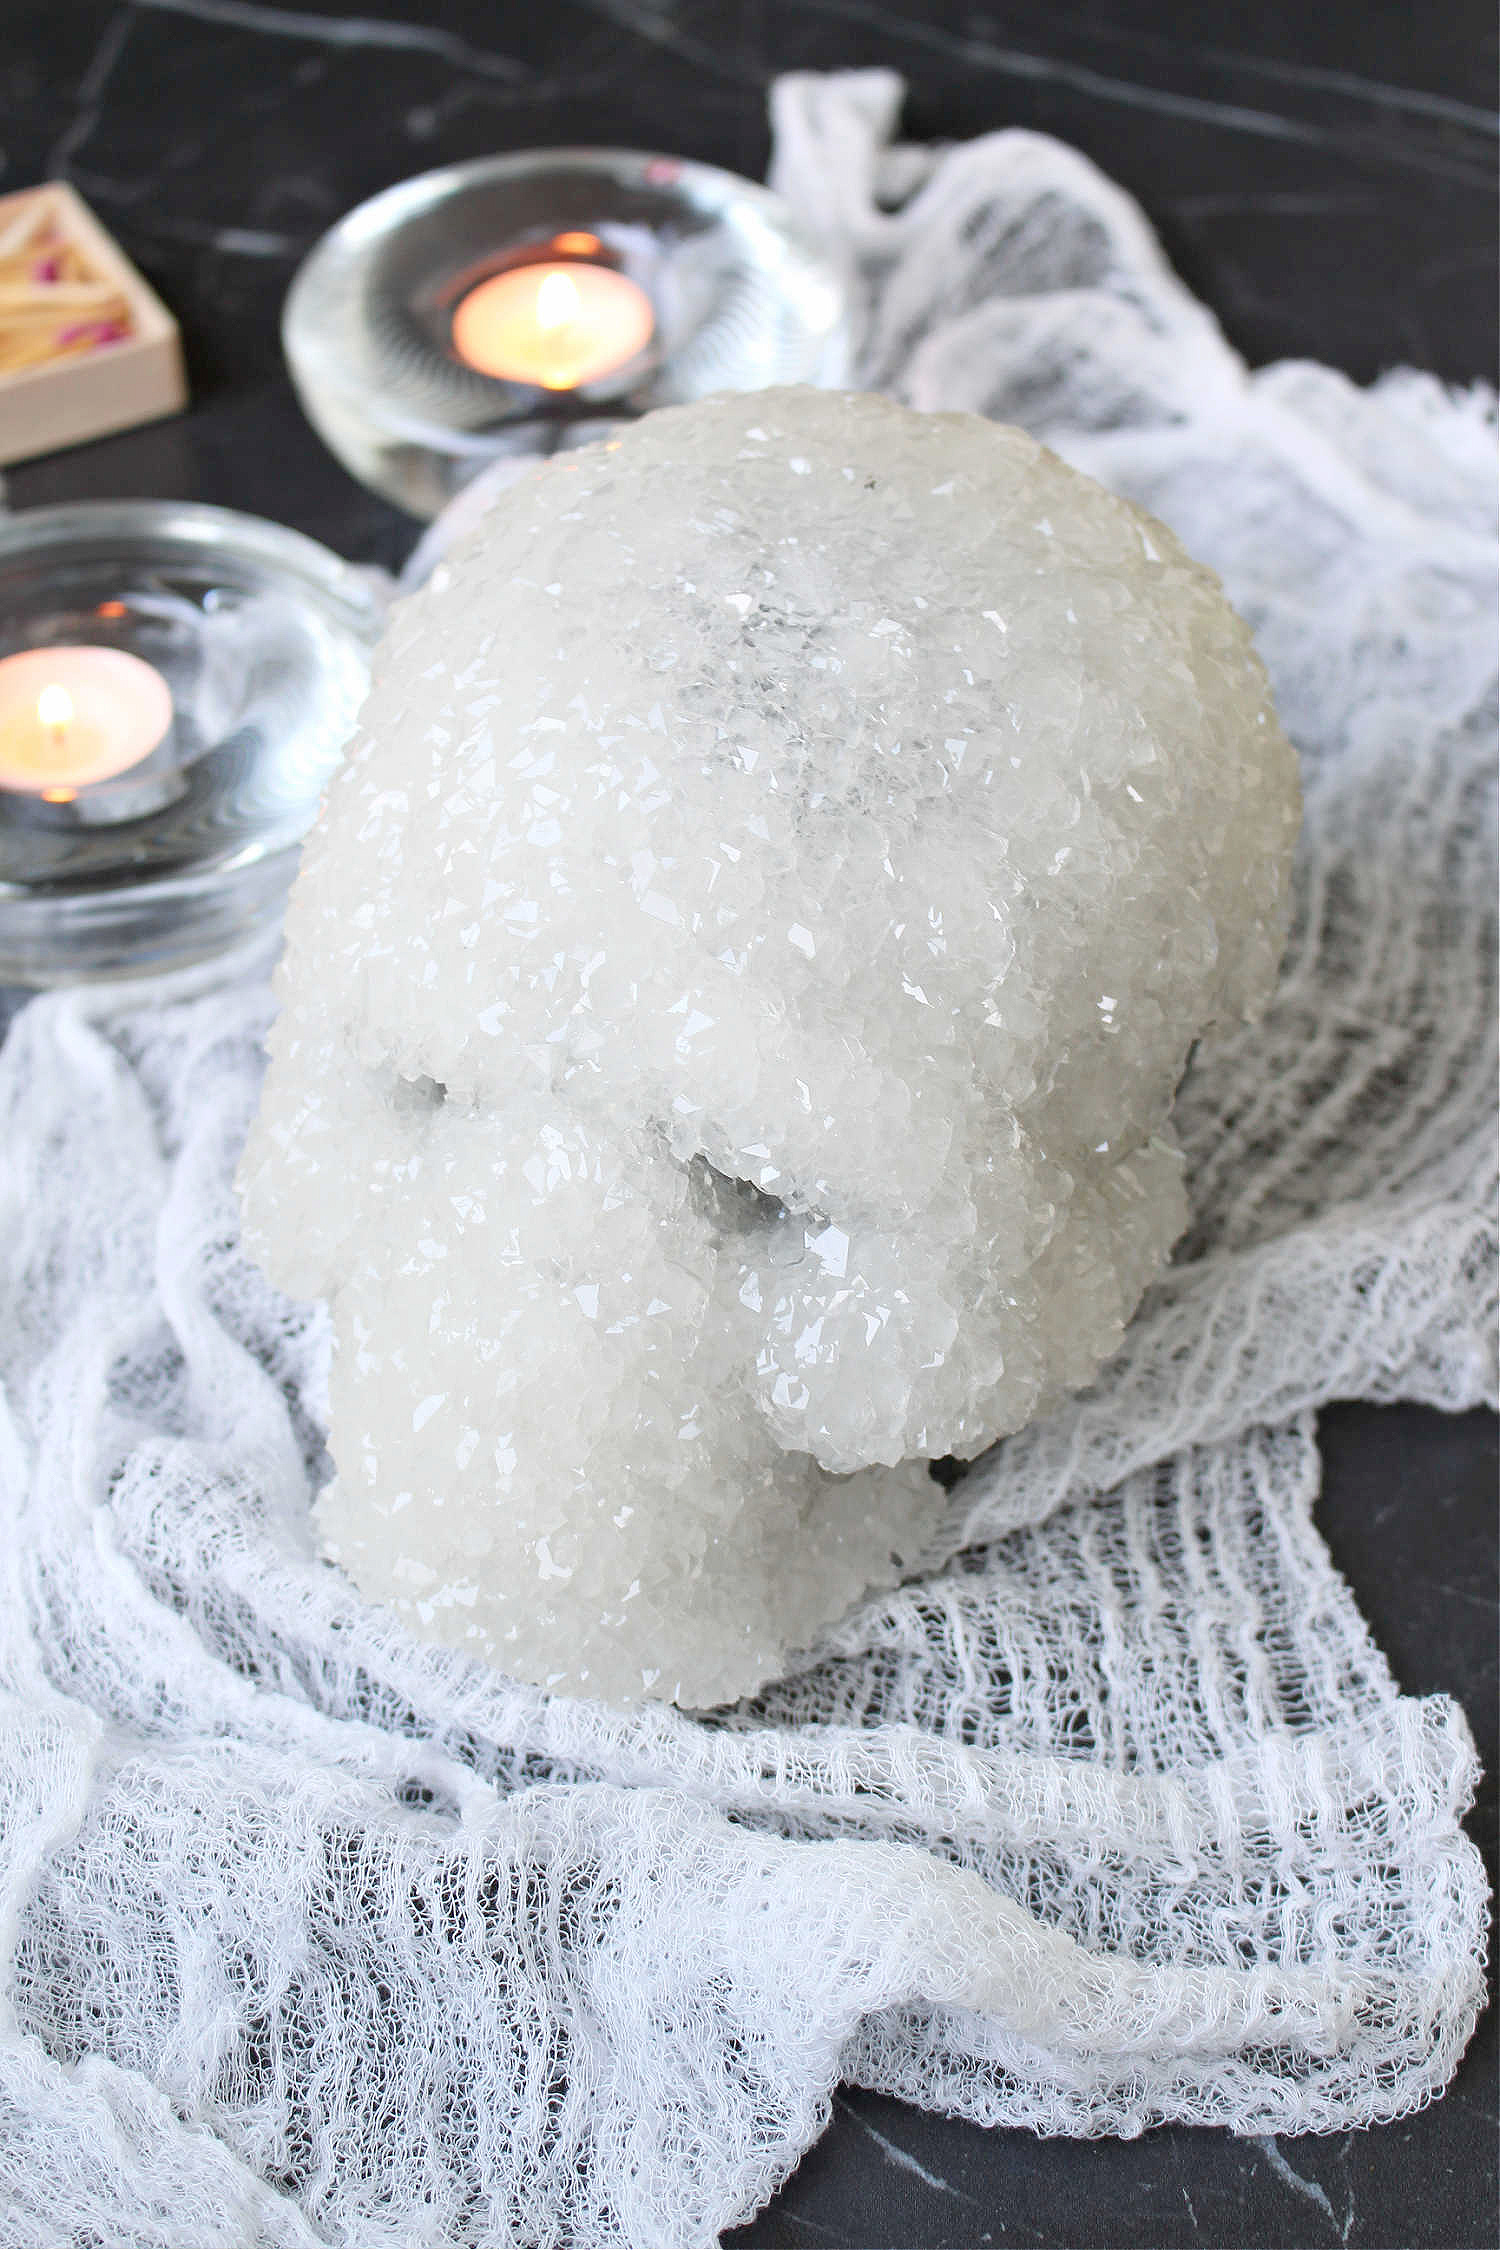 DIY Borax Crystal Skull Tutorial